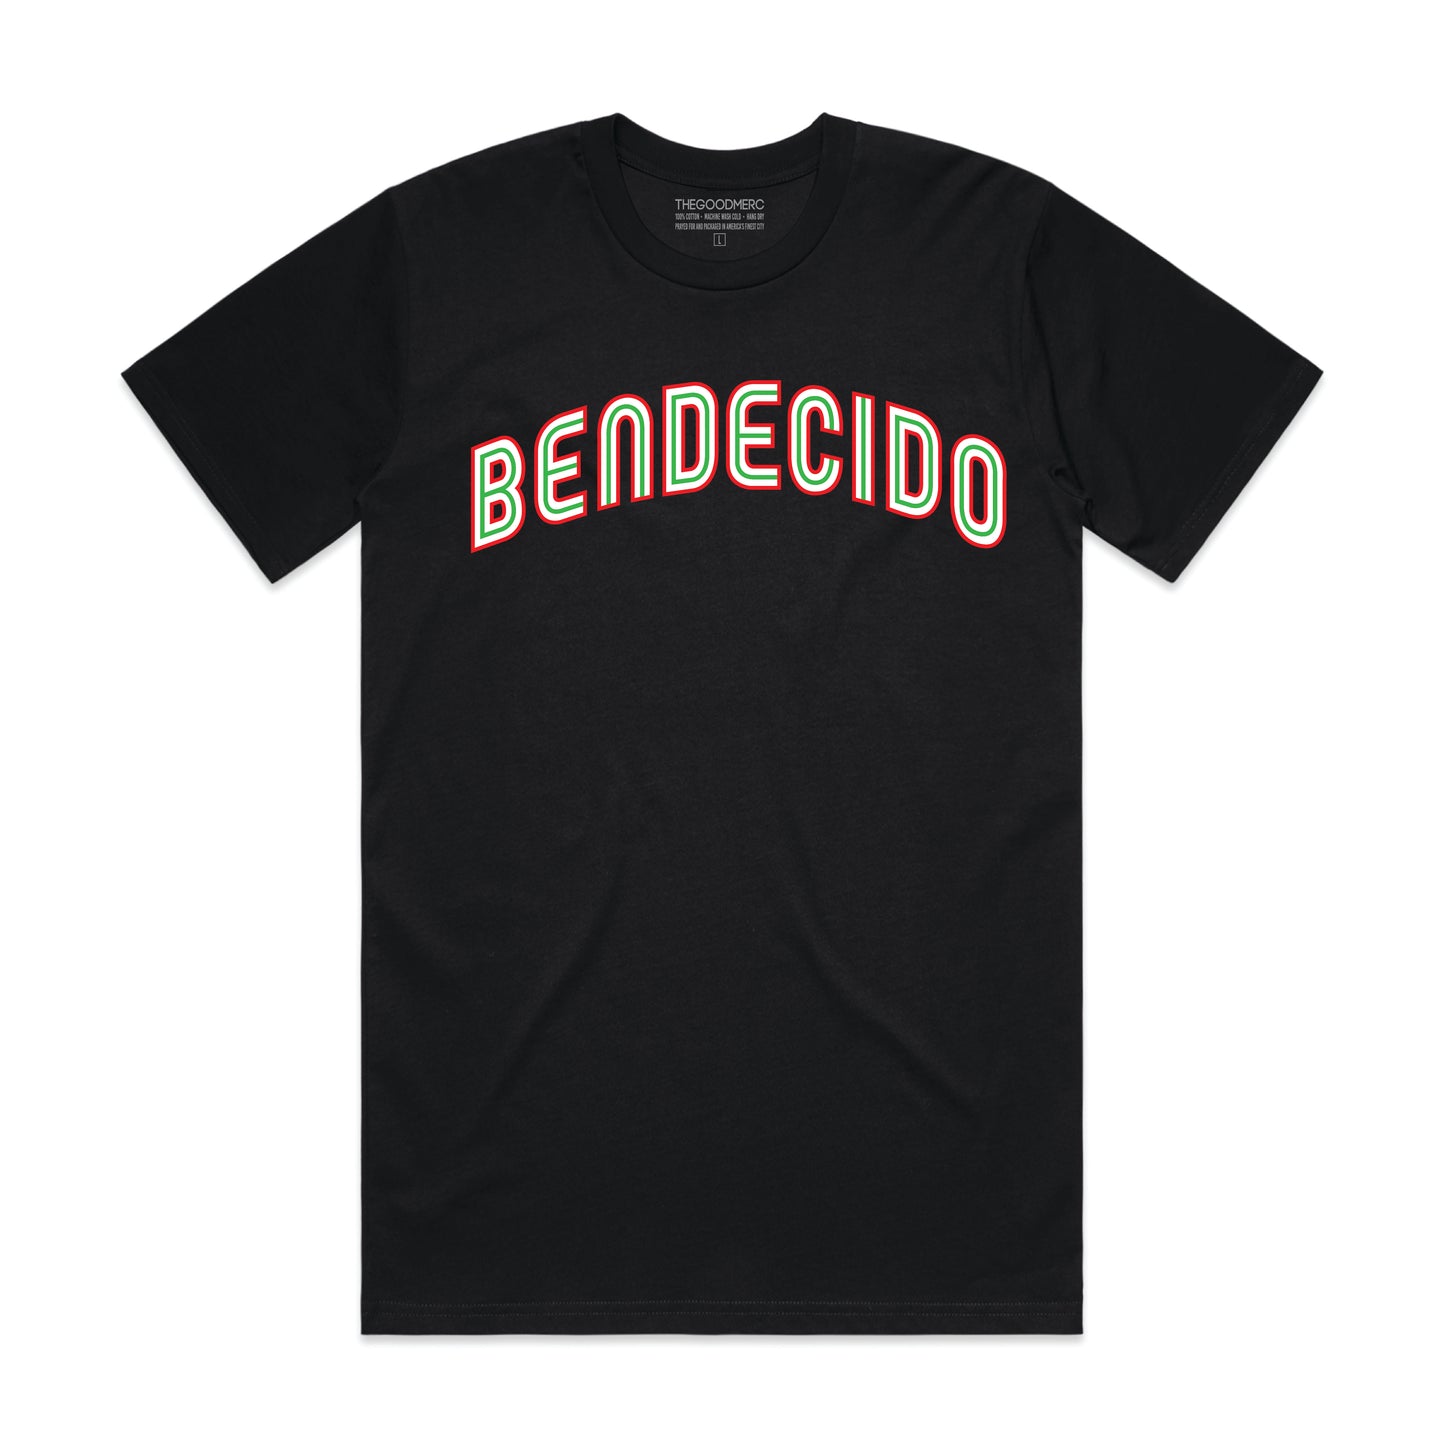 BENDECIDO (Blessed In Español)